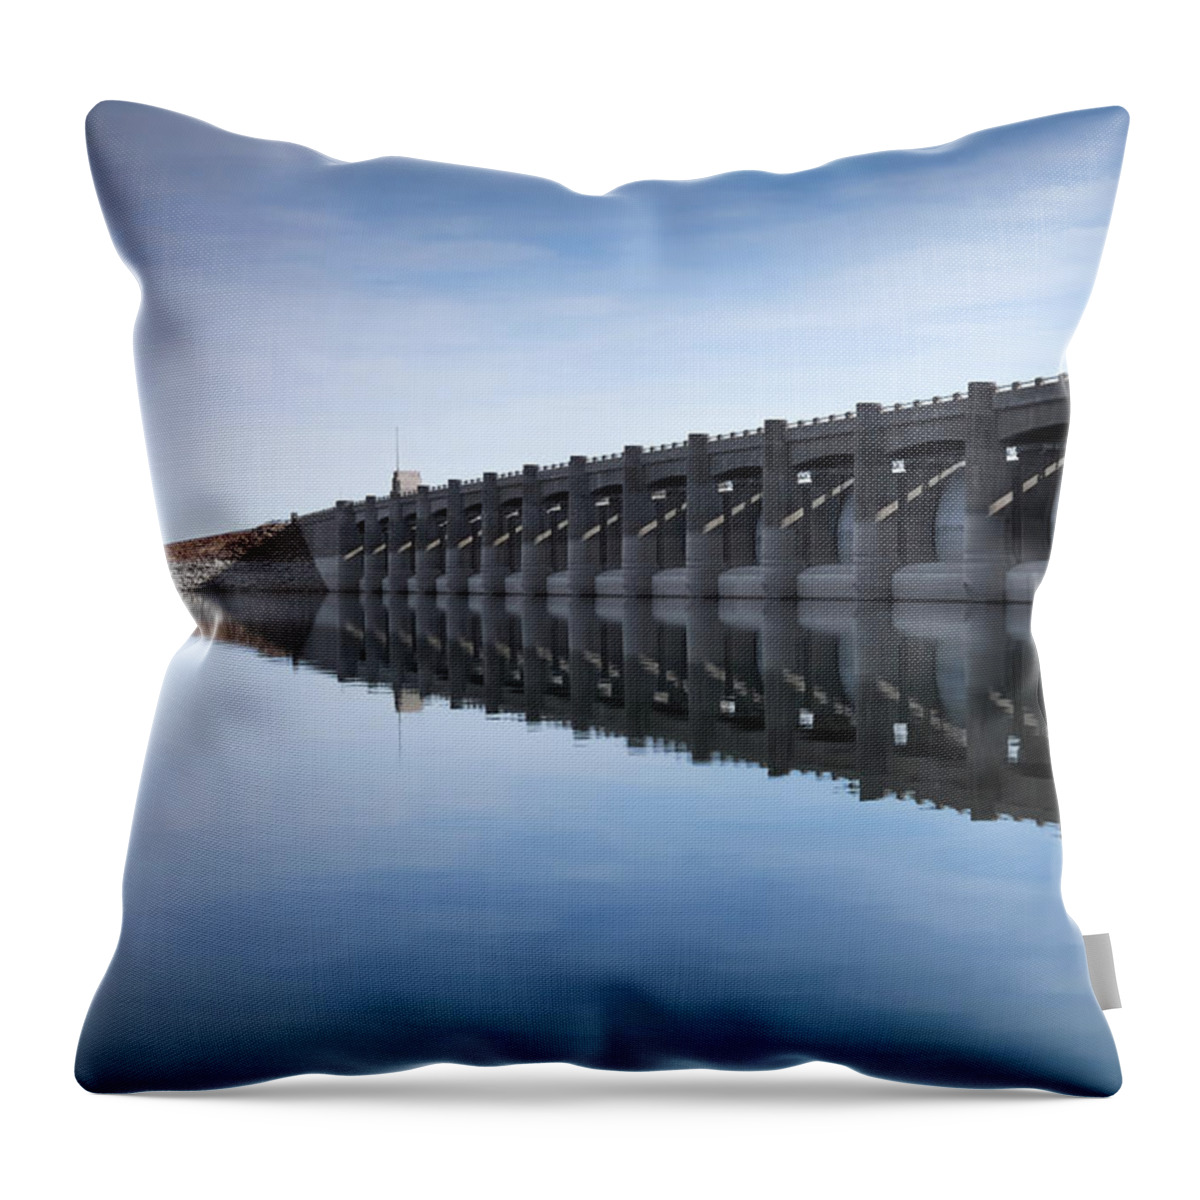 Dam Throw Pillow featuring the photograph John Martin Dam and Reservoir by Ernest Echols